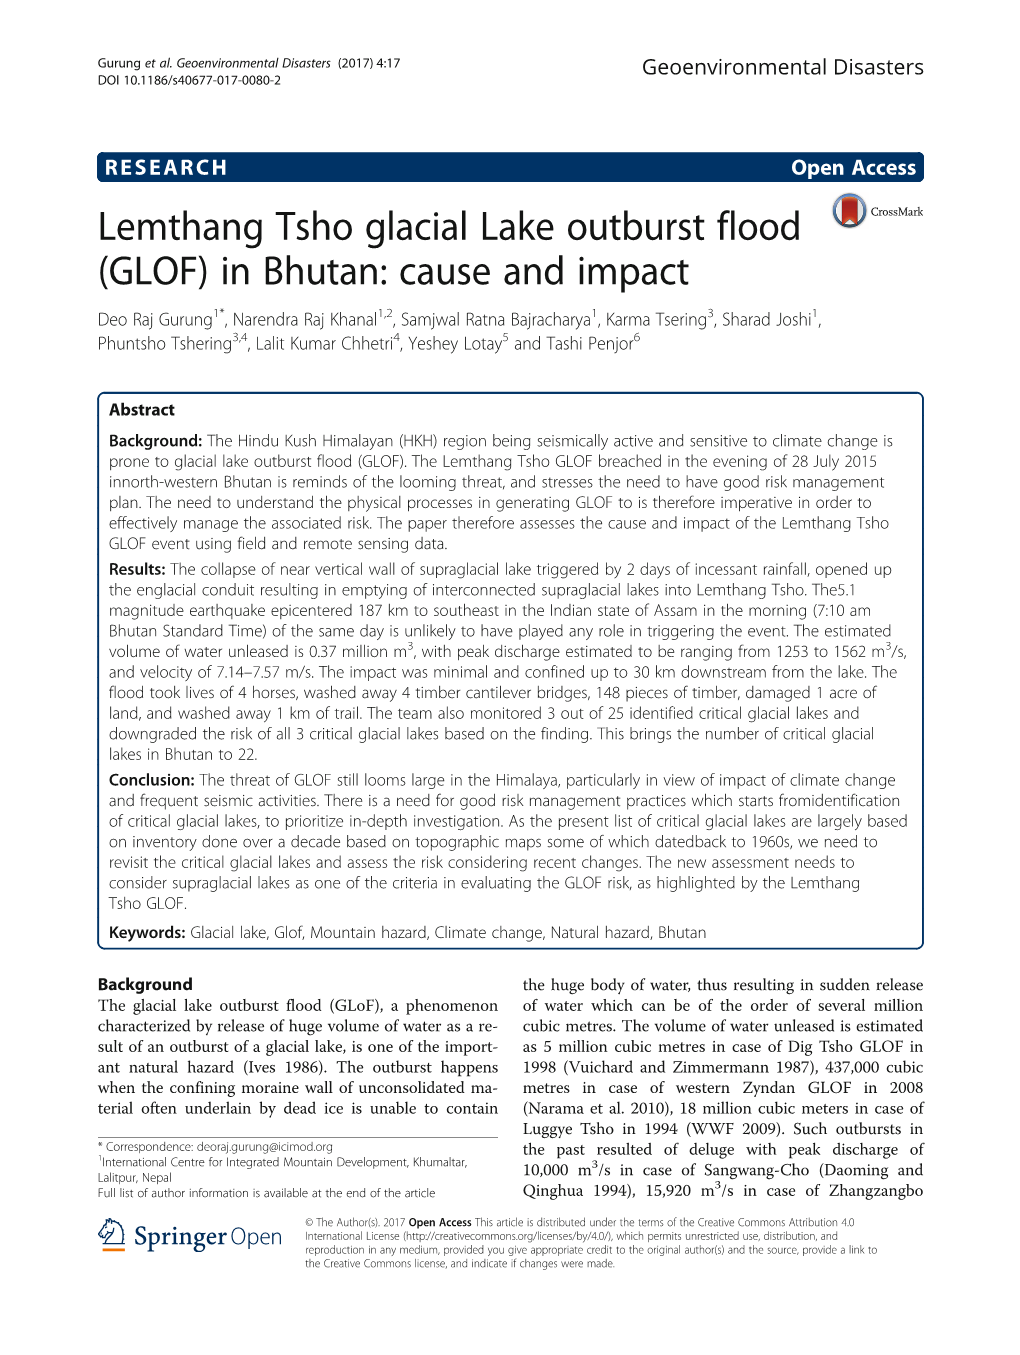 Lemthang Tsho Glacial Lake Outburst Flood (GLOF)